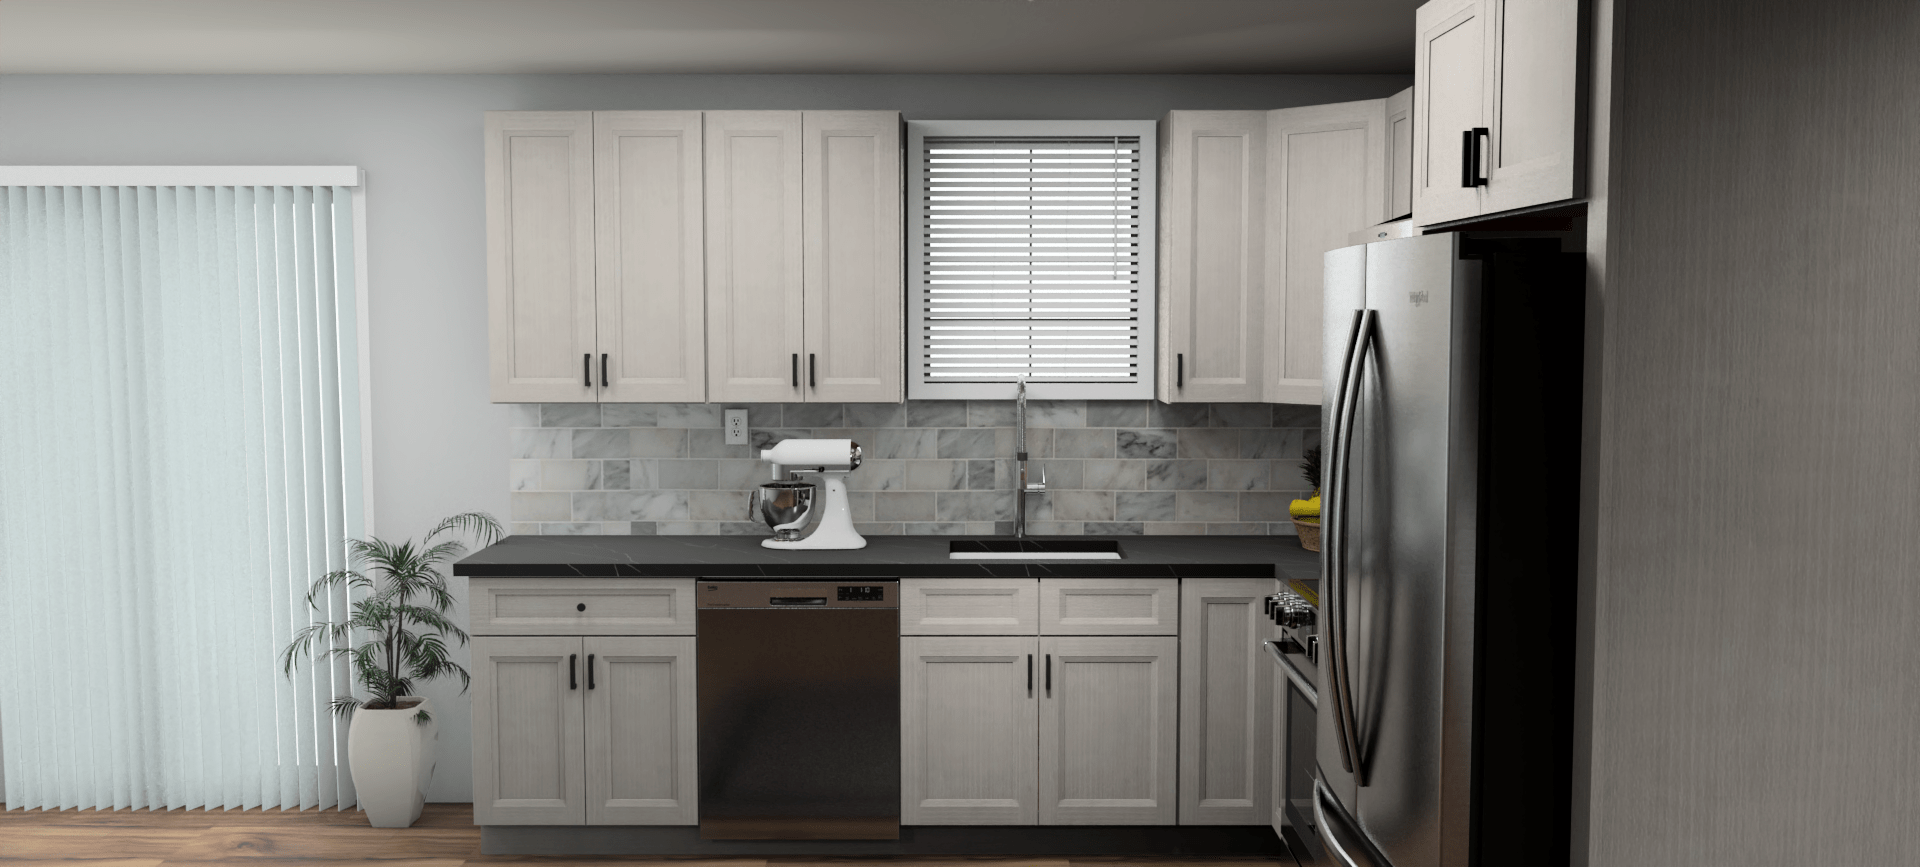 Fabuwood Allure Onyx Horizon 10 x 10 L Shaped Kitchen Side Layout Photo